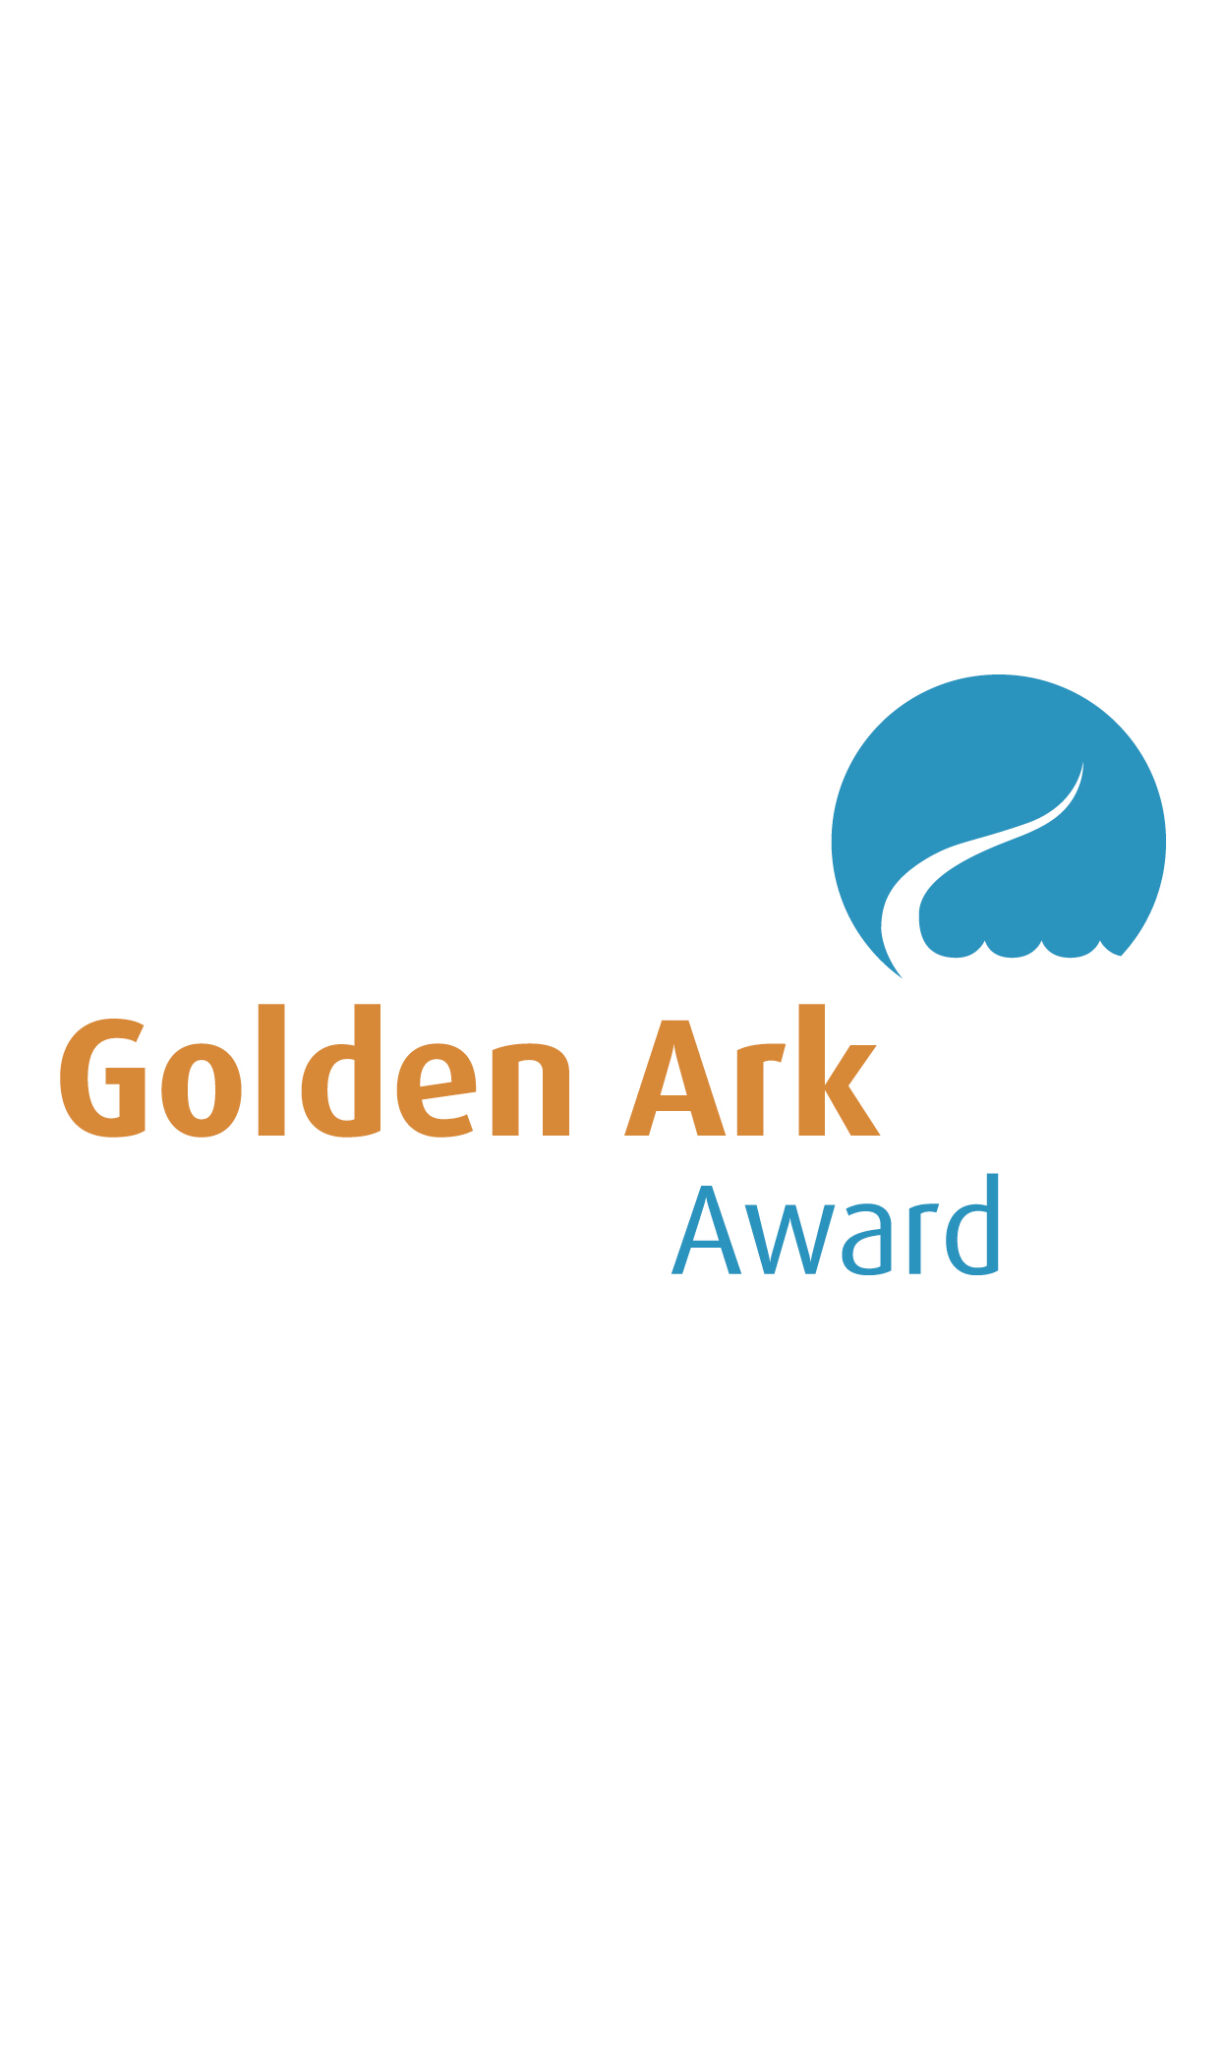 GOLDEN ARK AWARD